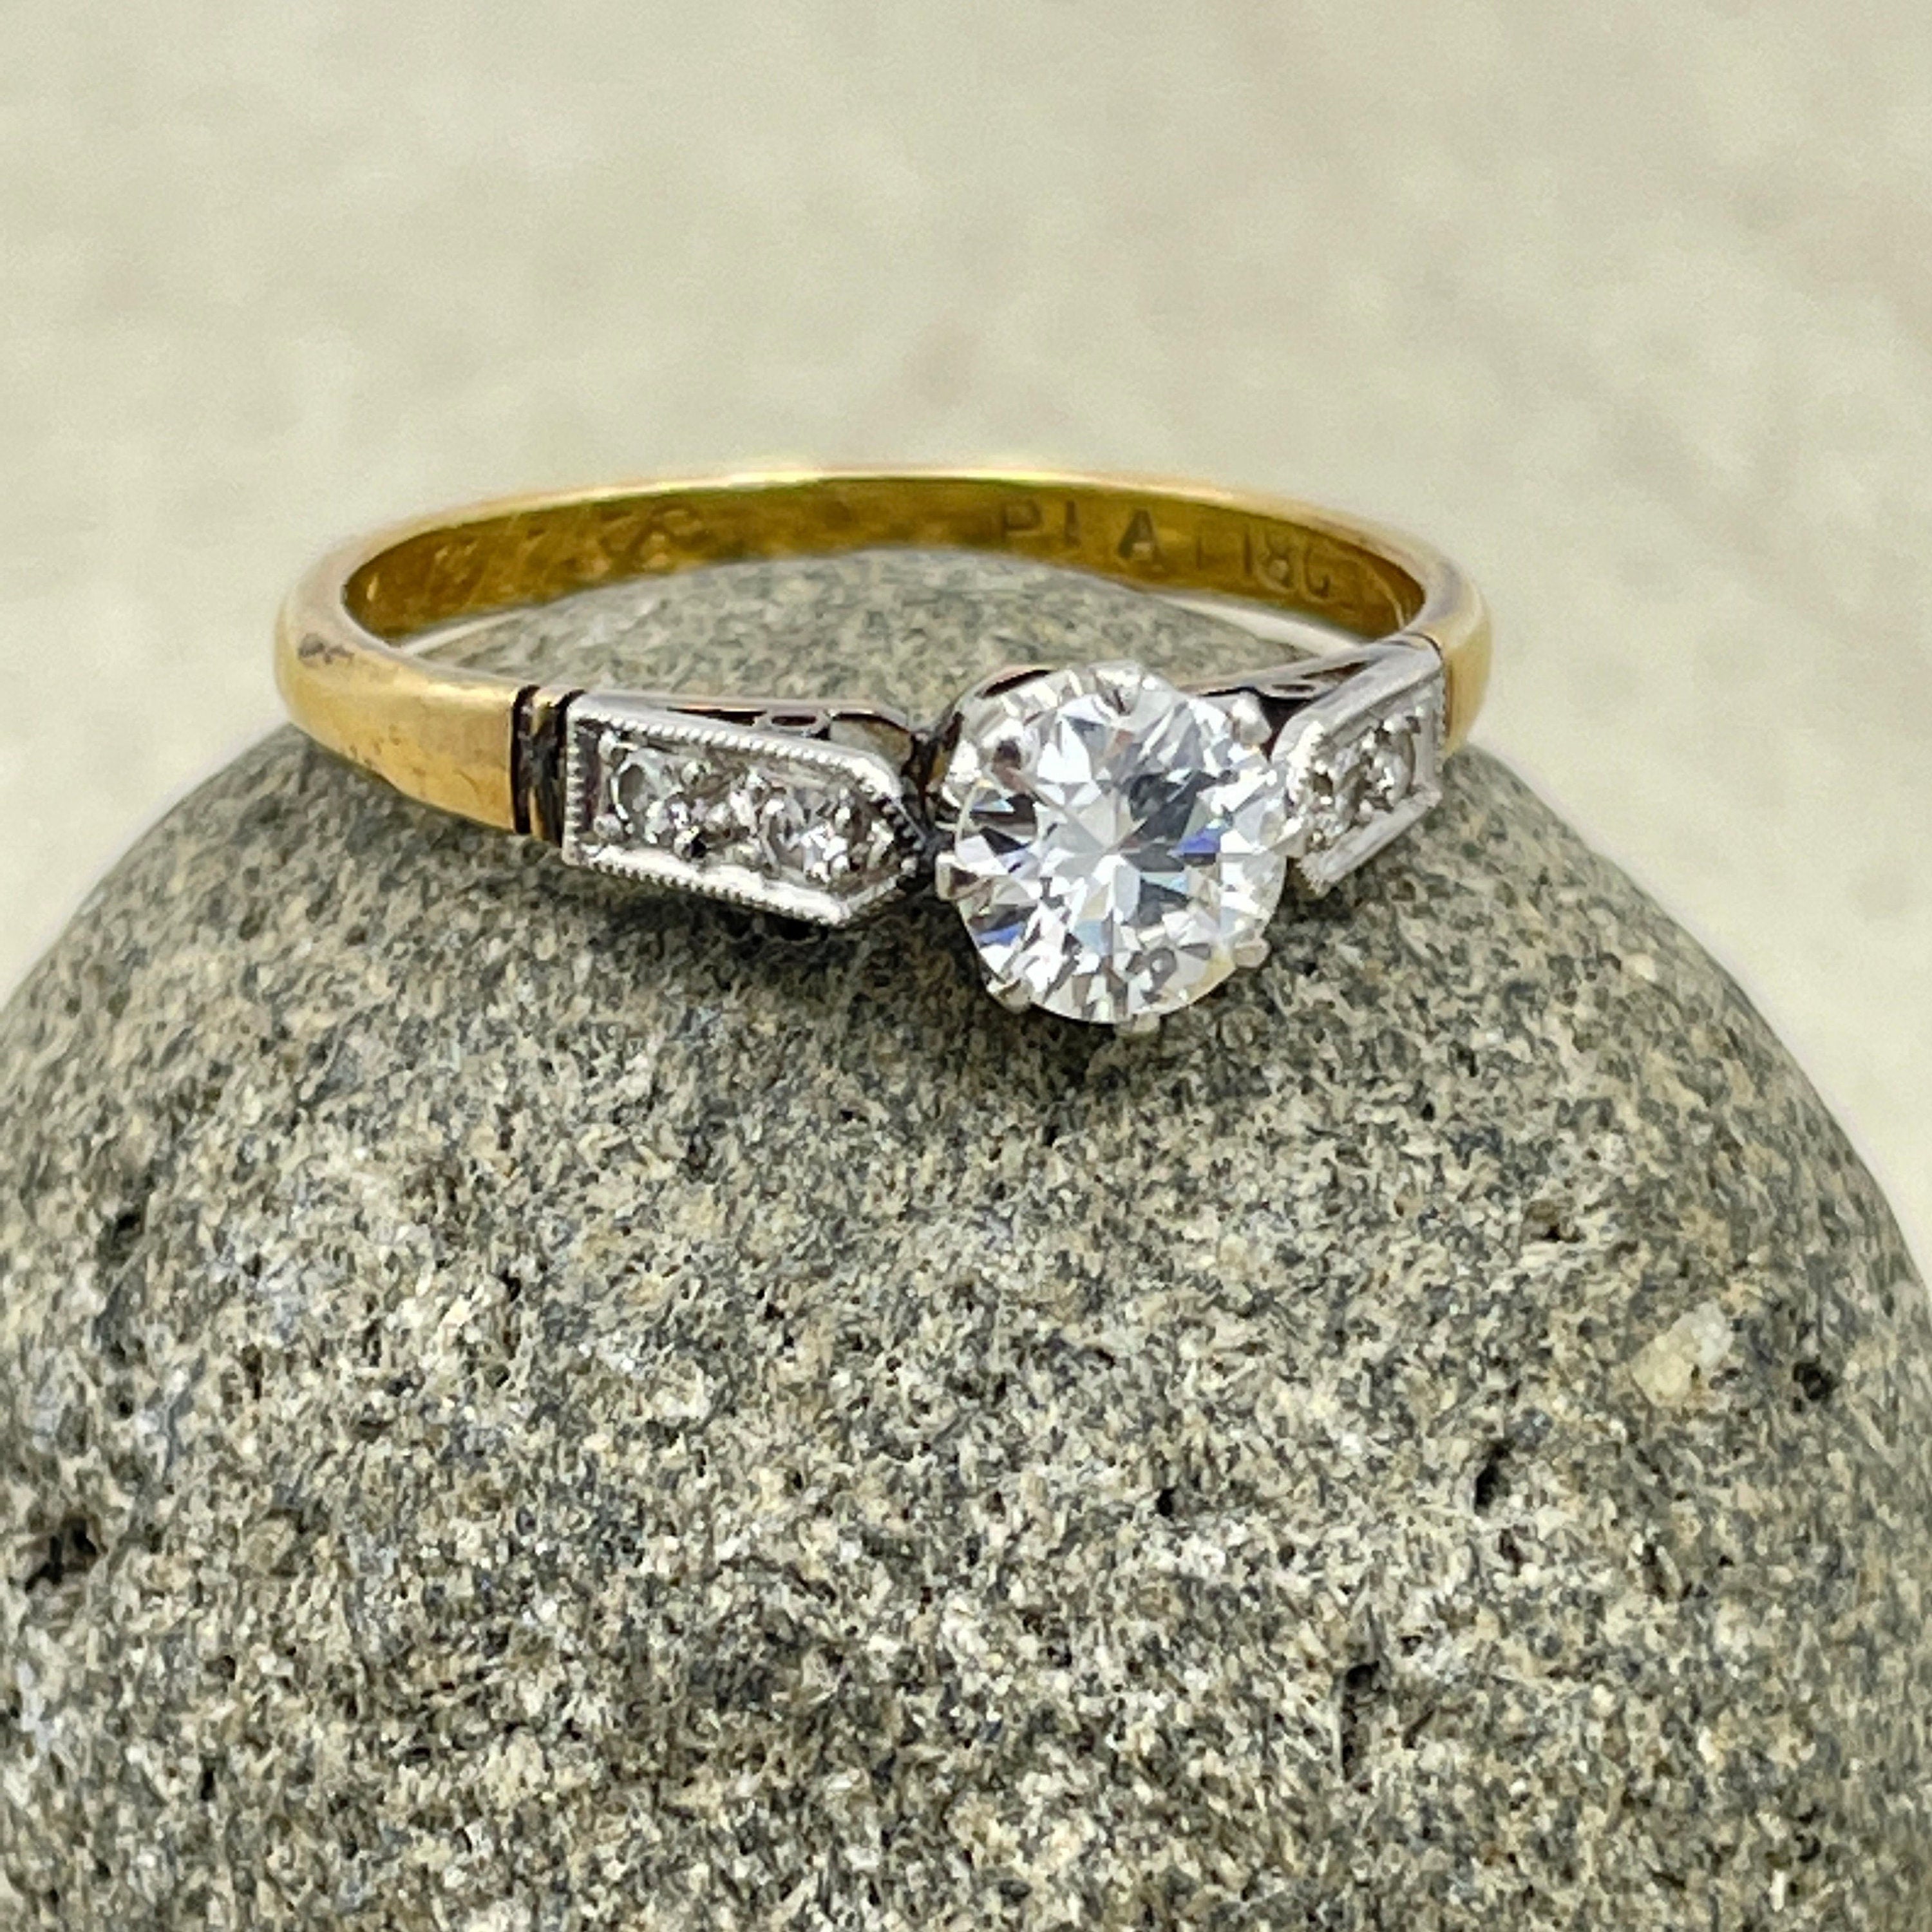 Vintage 1950s 18ct gold & platinum 0.50ct diamond solitaire engagement ring. diamond shoulders